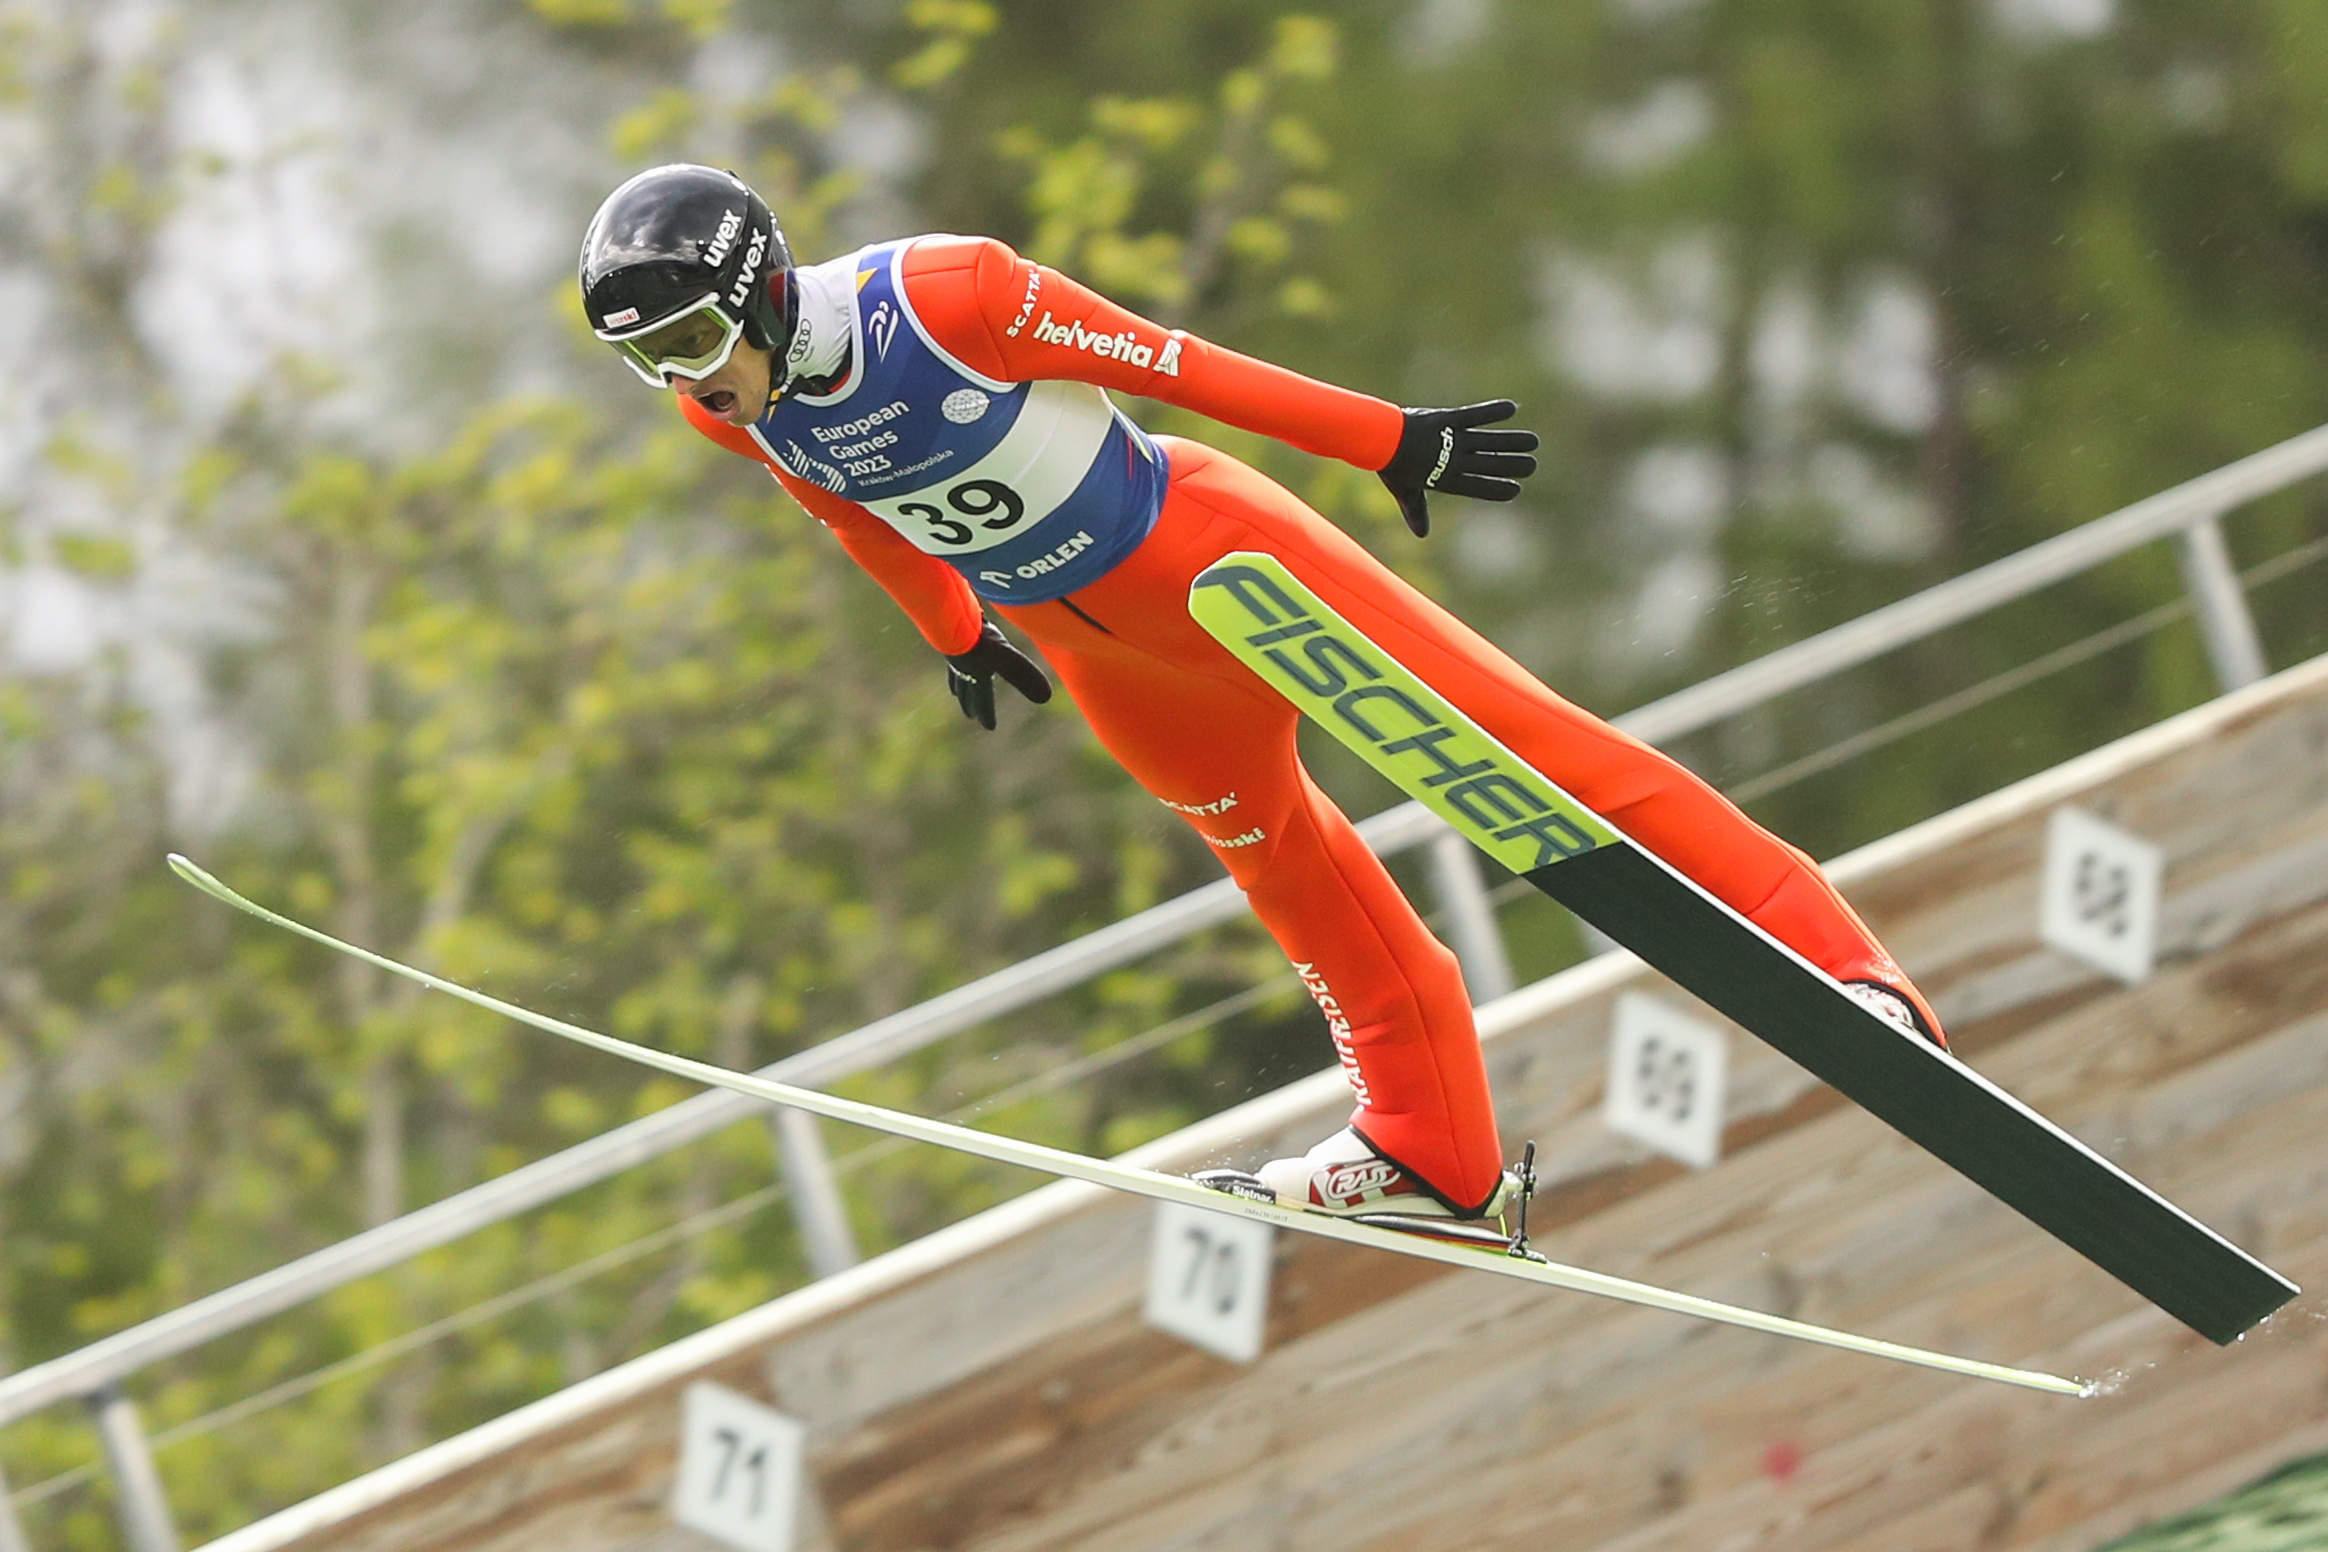 Ski jumping in Zakopane: 3 golden medals for Austria!